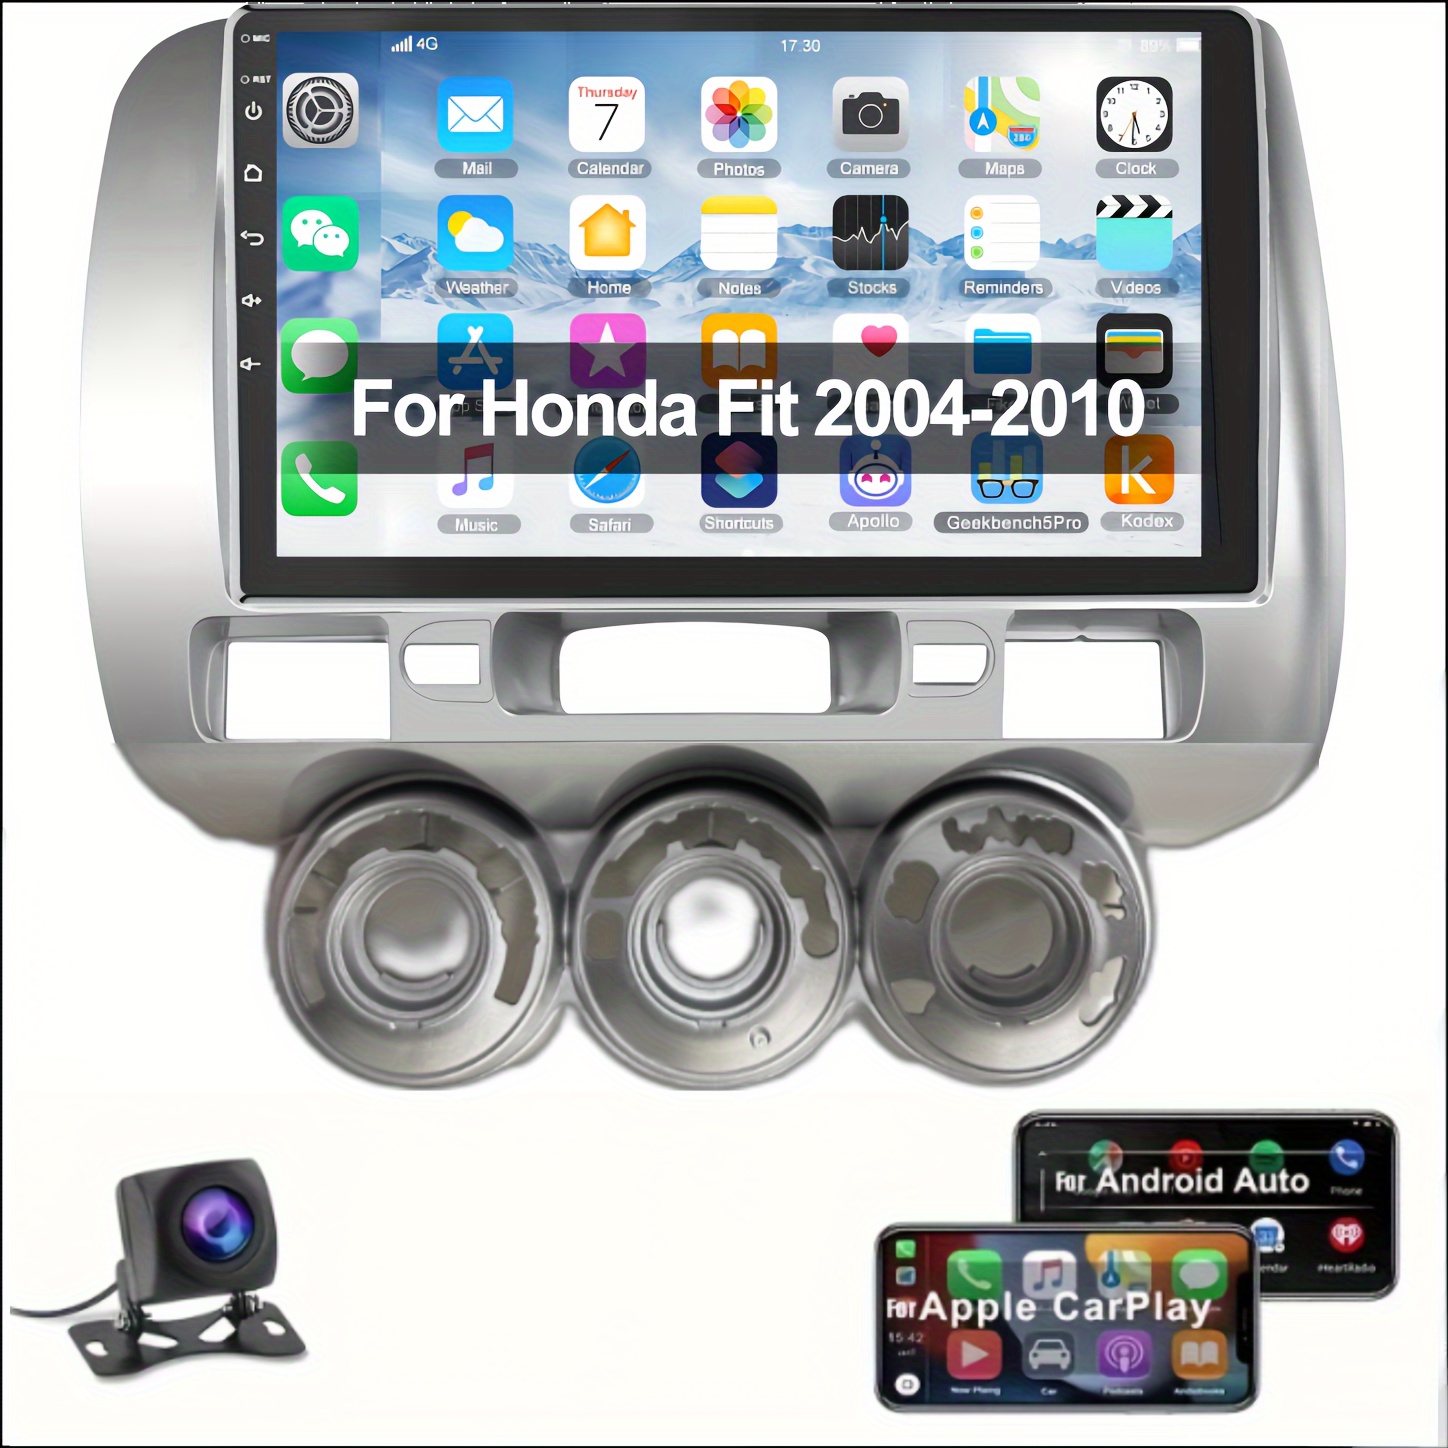 7 pulgadas para 2011 Audi A3 Radio Android Sistema de navegación GPS con  Bluetooth HD Pantalla táctil Carplay compatible con cámara de respaldo